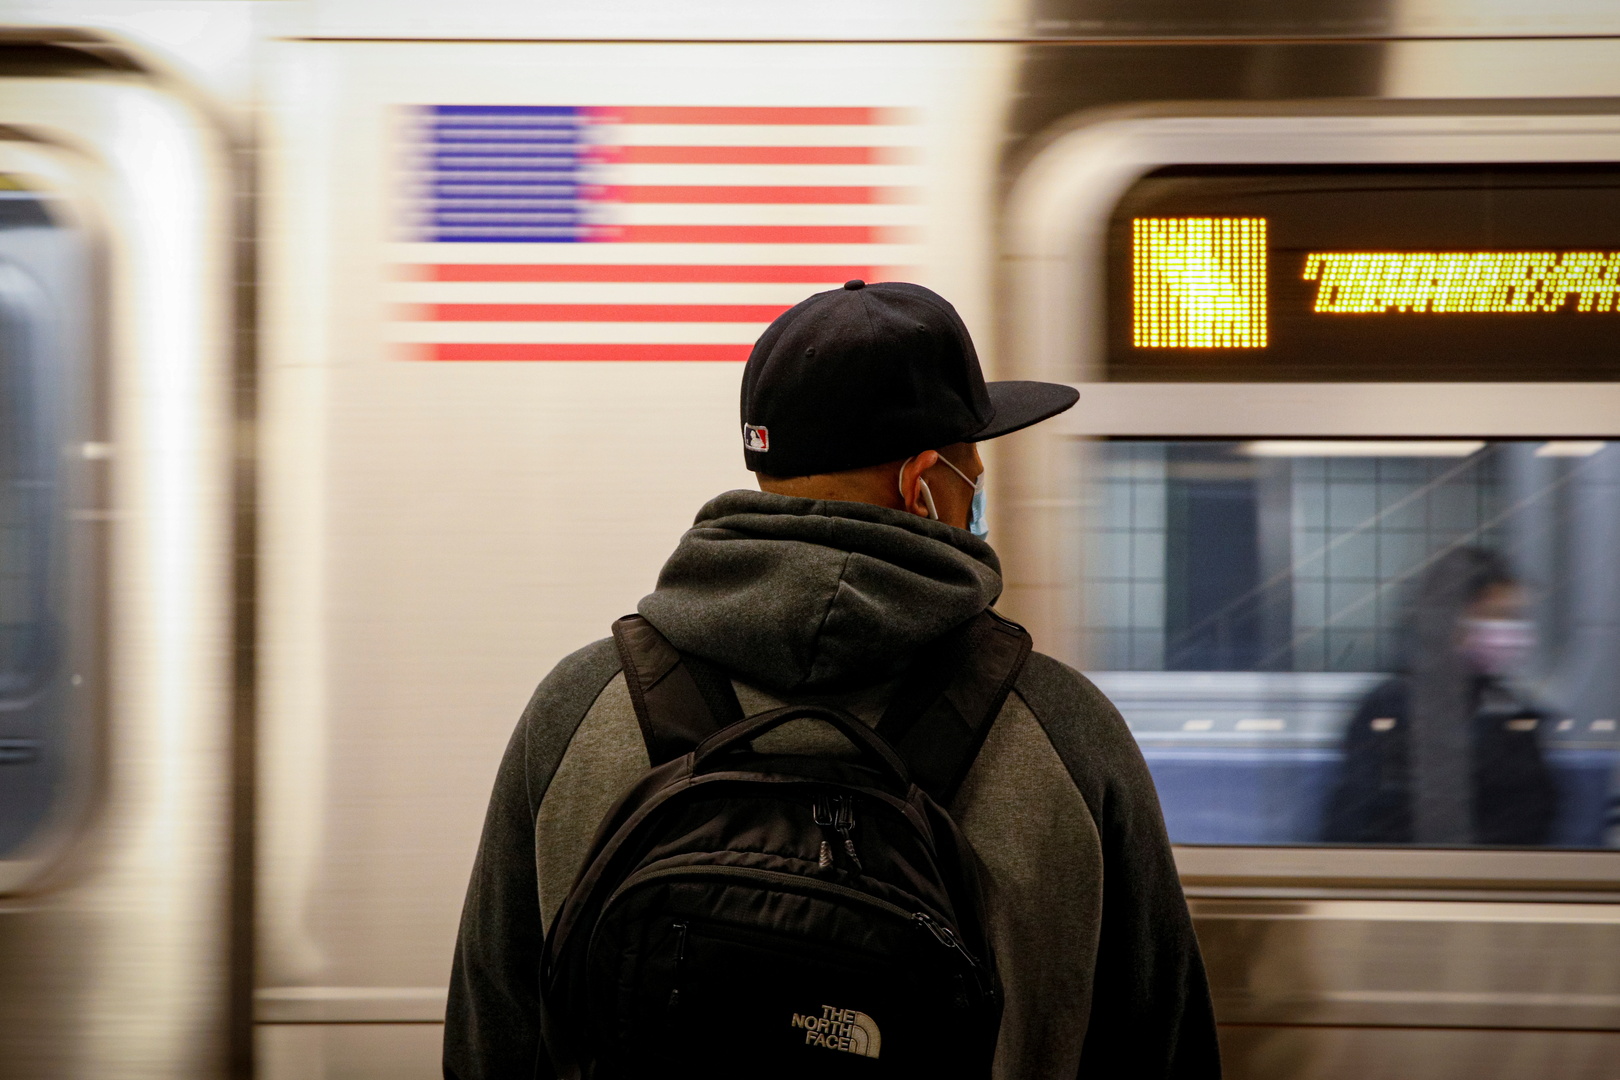 الولايات المتحدة تطلق غازات غير سامة في مترو أنفاق نيويورك